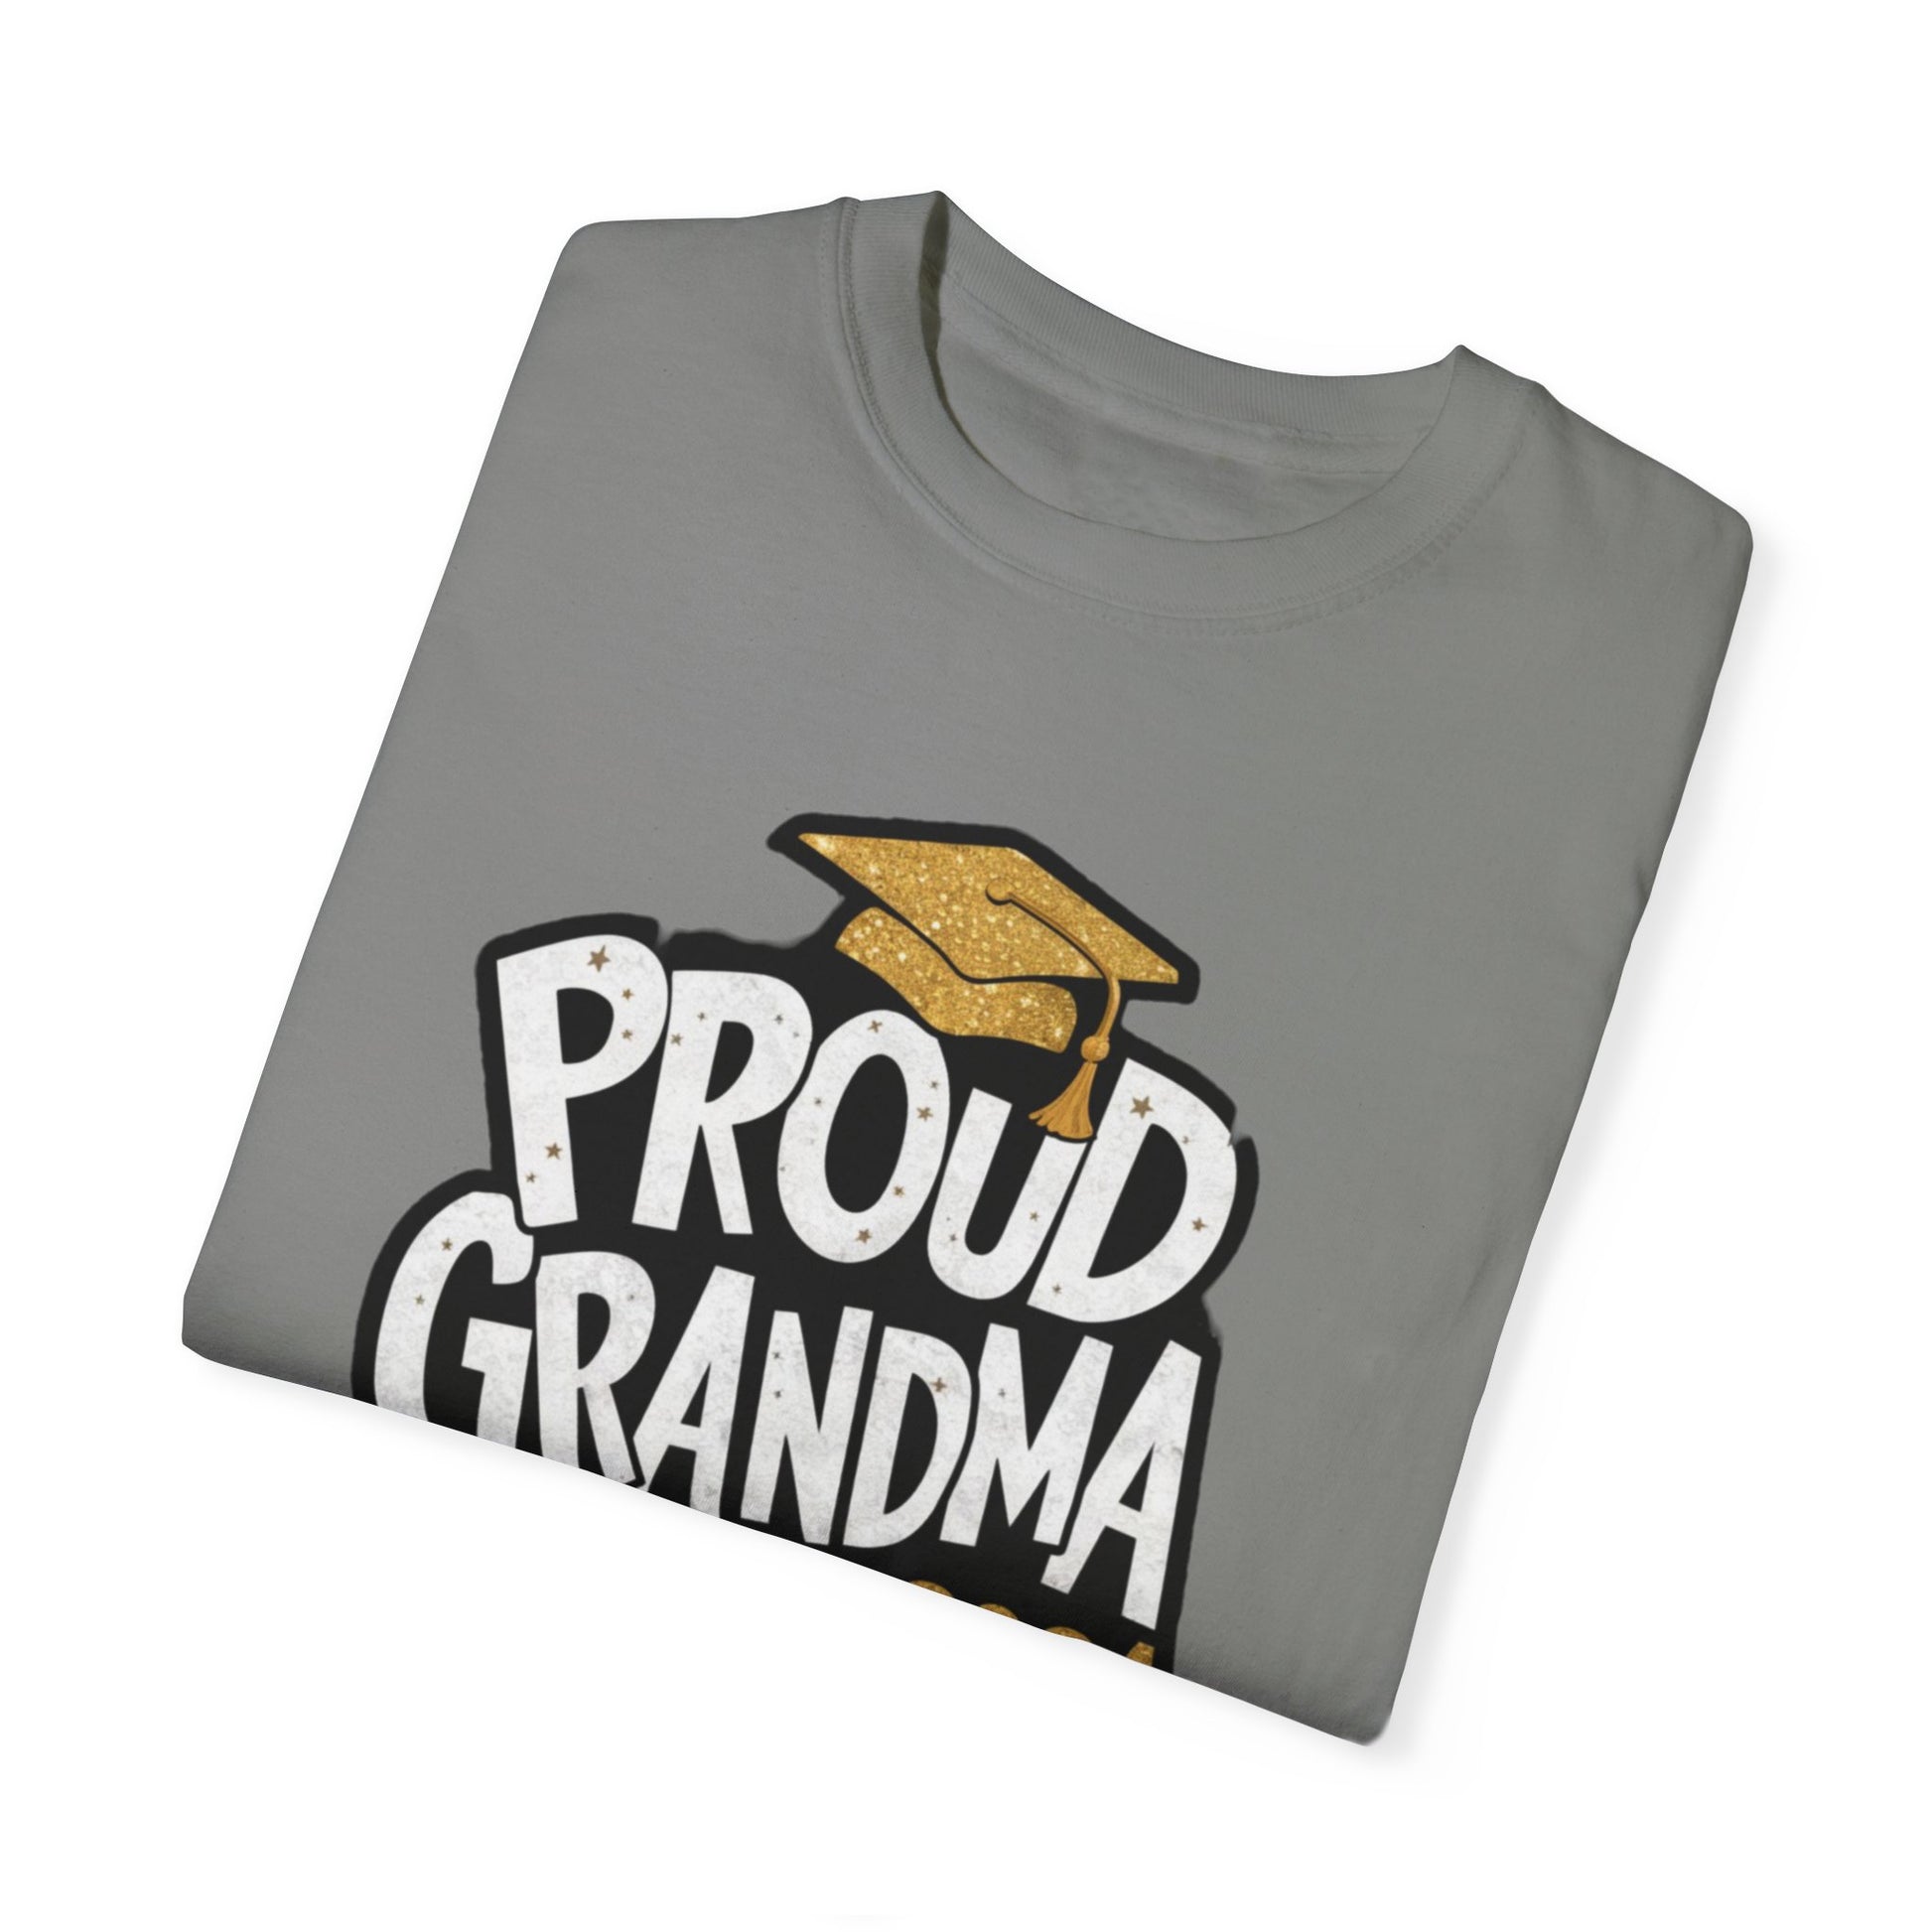 Proud of Grandma 2024 Graduate Unisex Garment-dyed T-shirt Cotton Funny Humorous Graphic Soft Premium Unisex Men Women Granite T-shirt Birthday Gift-26